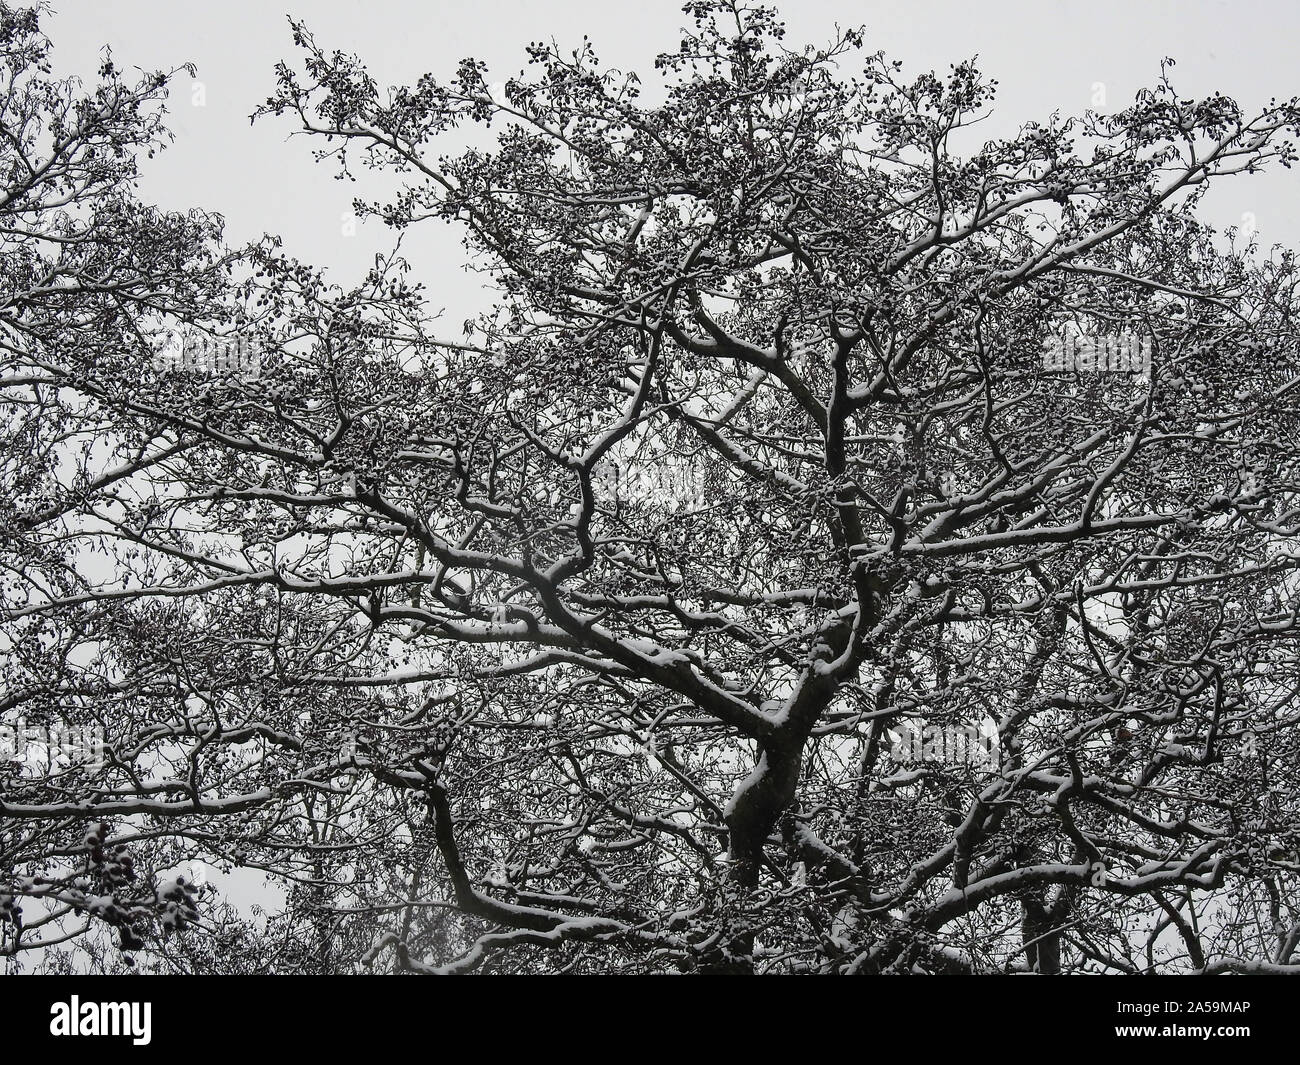 Arbre généalogique panoramique couverte de neige fraîche. Suppression sous forme de branches d'arbre avec de la neige. Banque D'Images